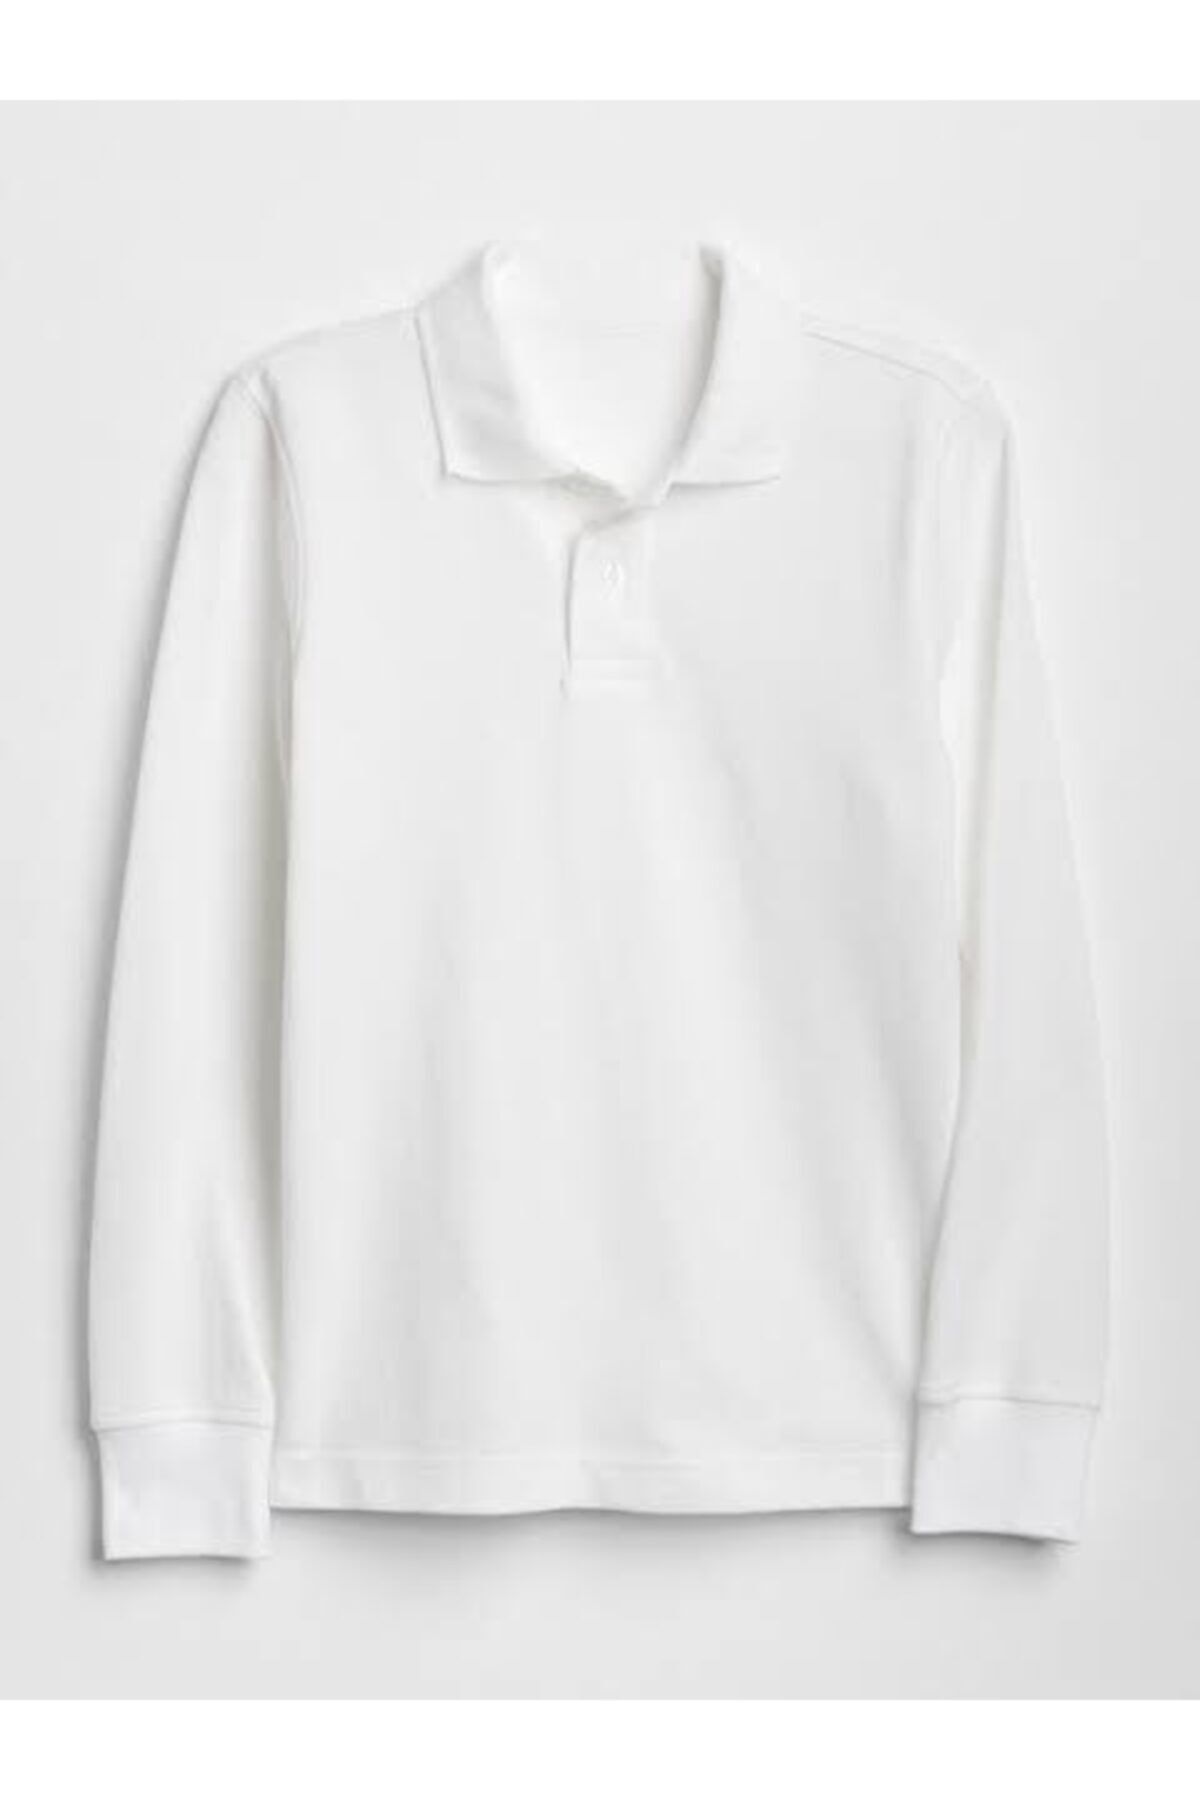 nacar çarşı Unısex Beyaz  Uzun Kol Lakost  Polo Yaka T-shirt